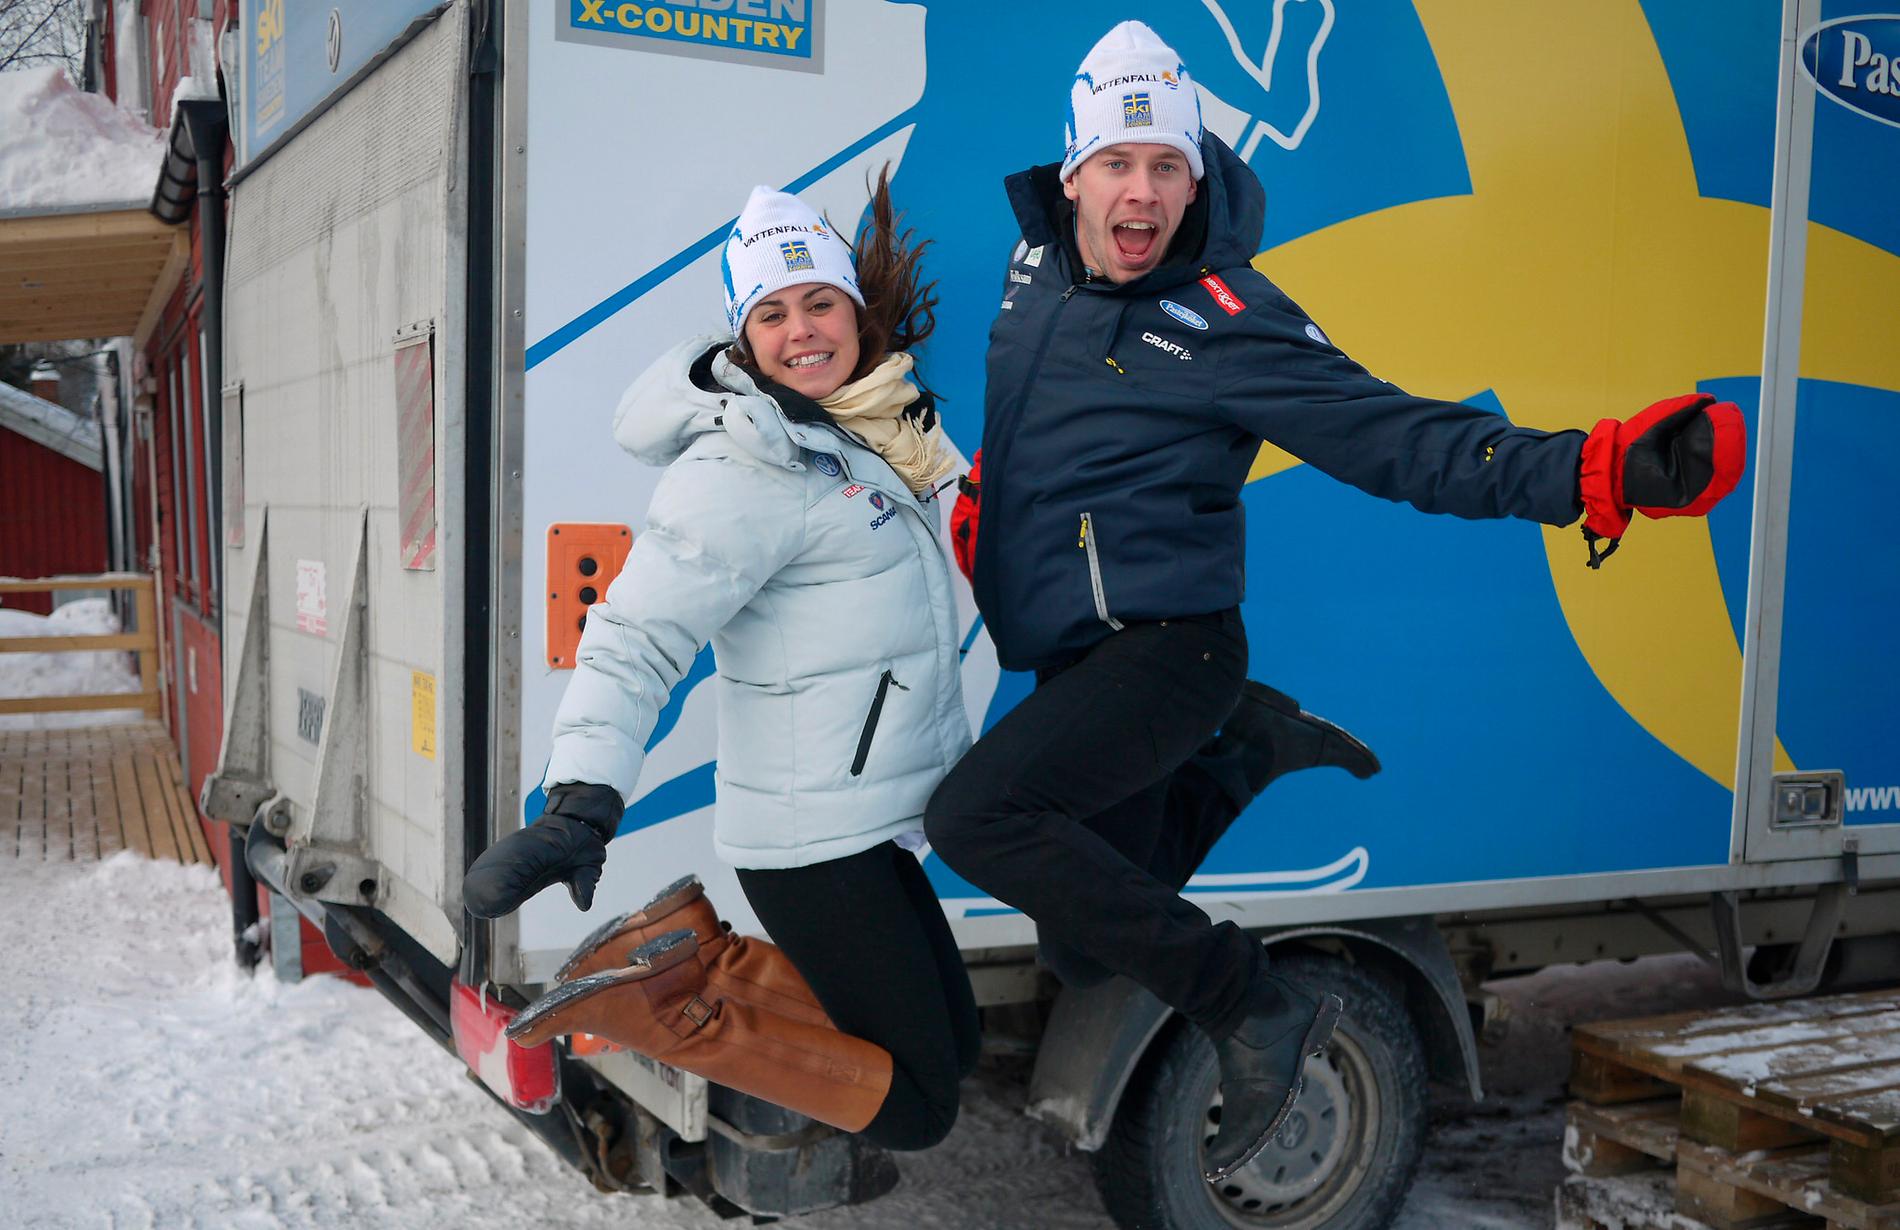 Skidlands­lagets VM-par, Anna Haag och Emil Jönsson, är vana bloggare. Men nu möter de för första gången en större publik. ”Shit, det är inte alls det­samma”, säger Jönsson.